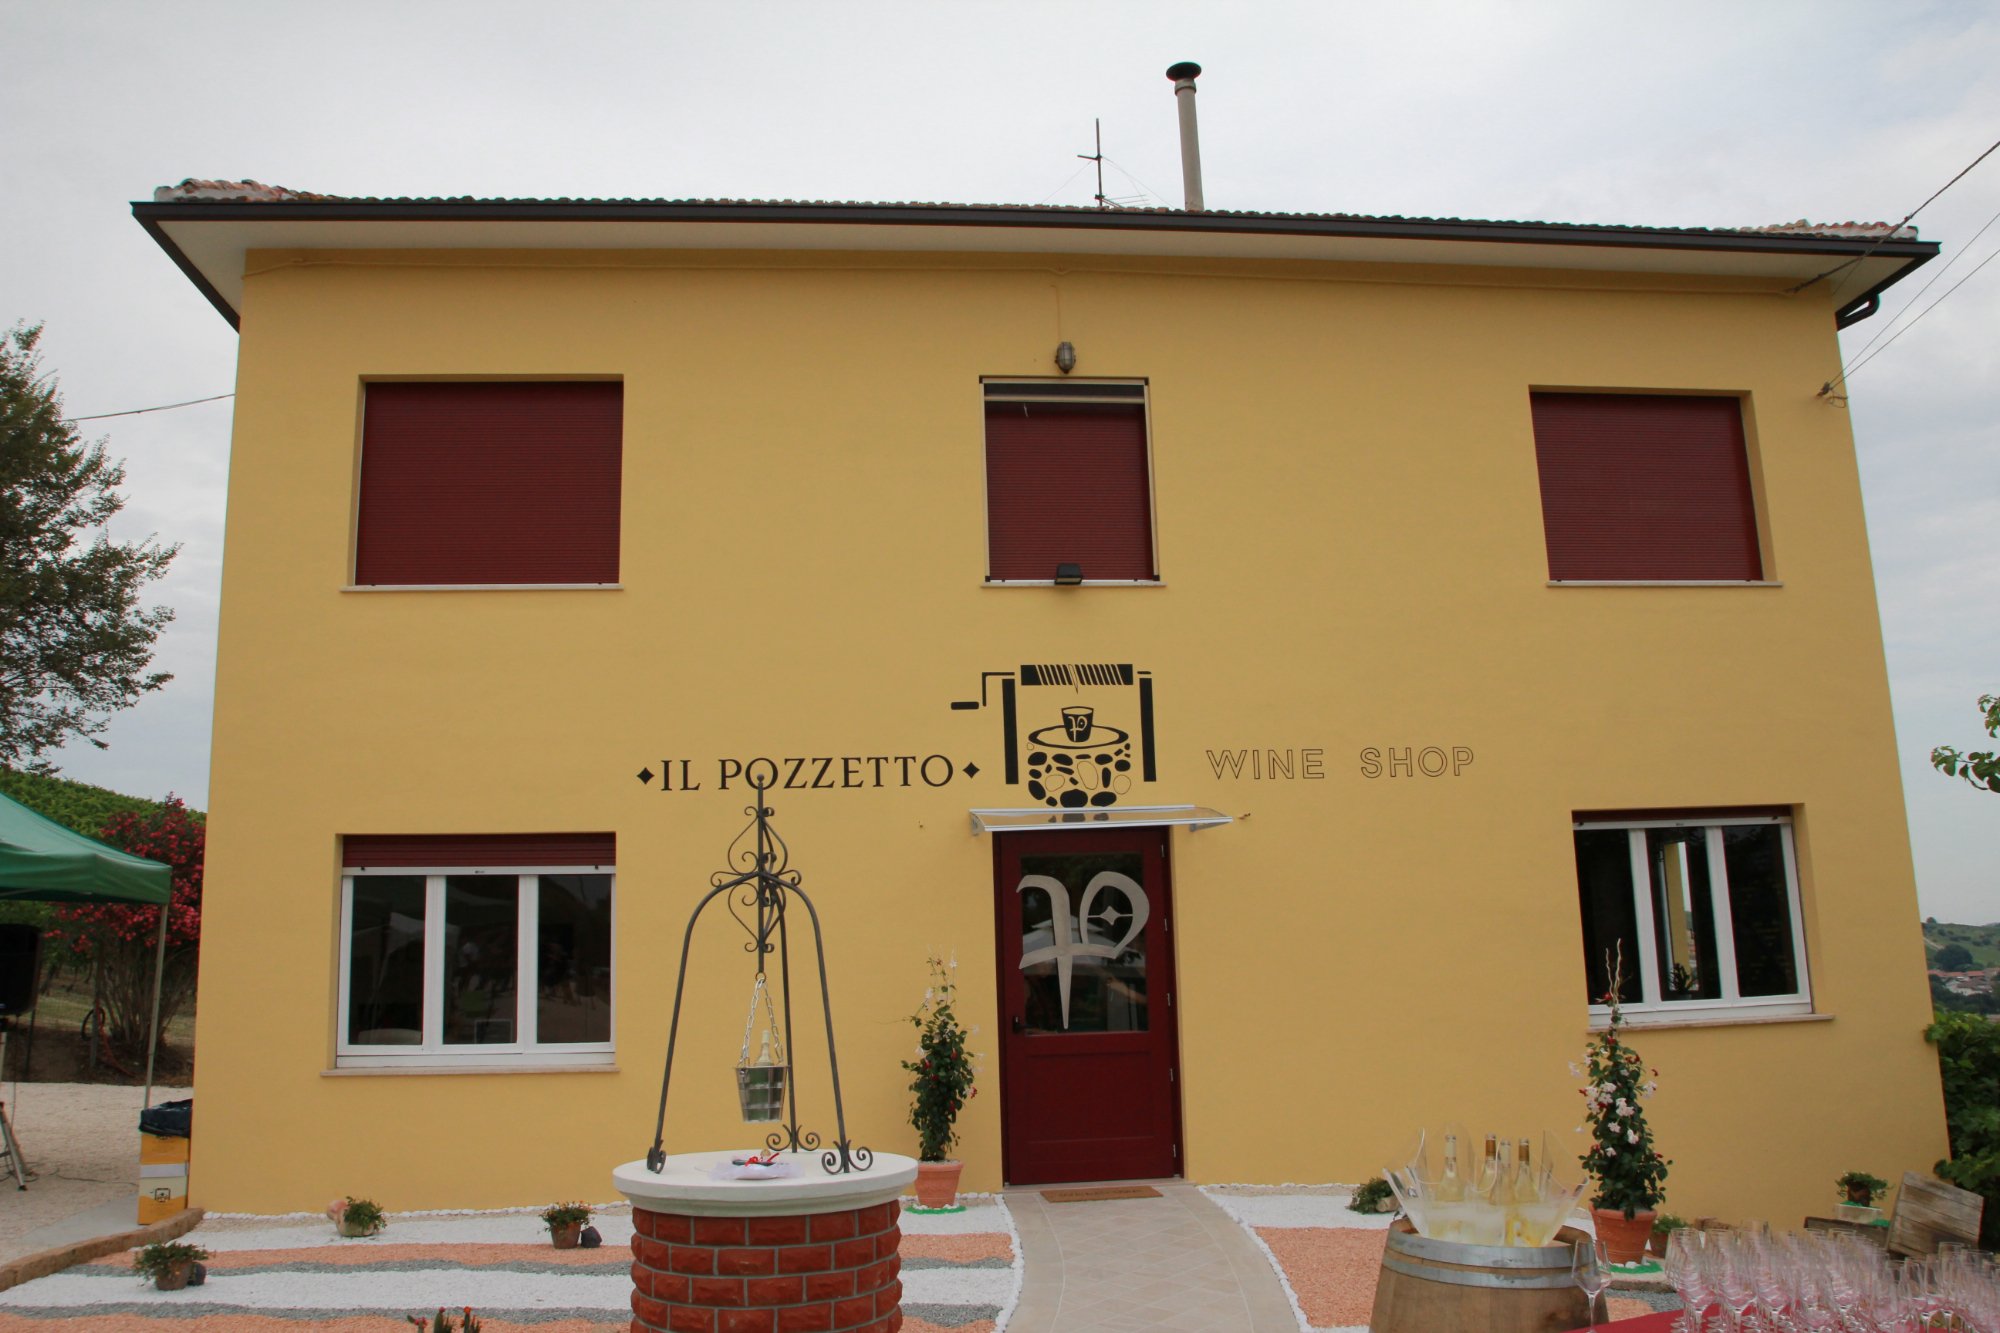 Il Pozzetto Wine Shop